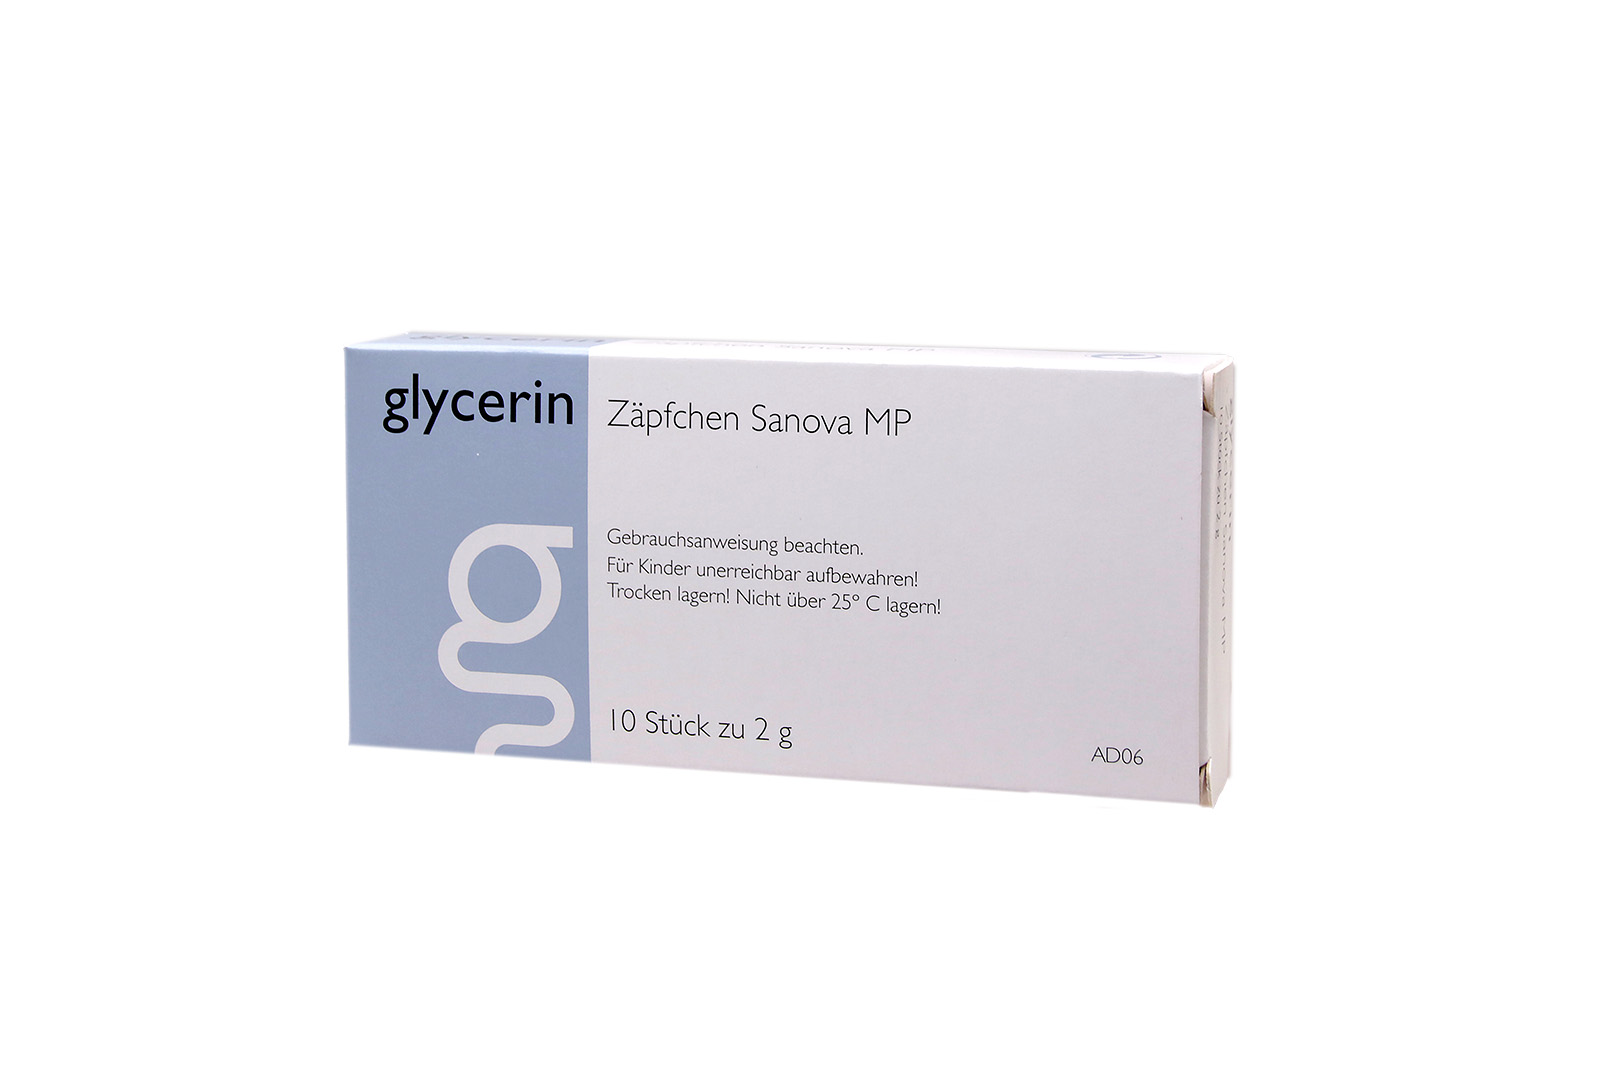 Glycerin Zäpfchen "Sanova" MP 2g